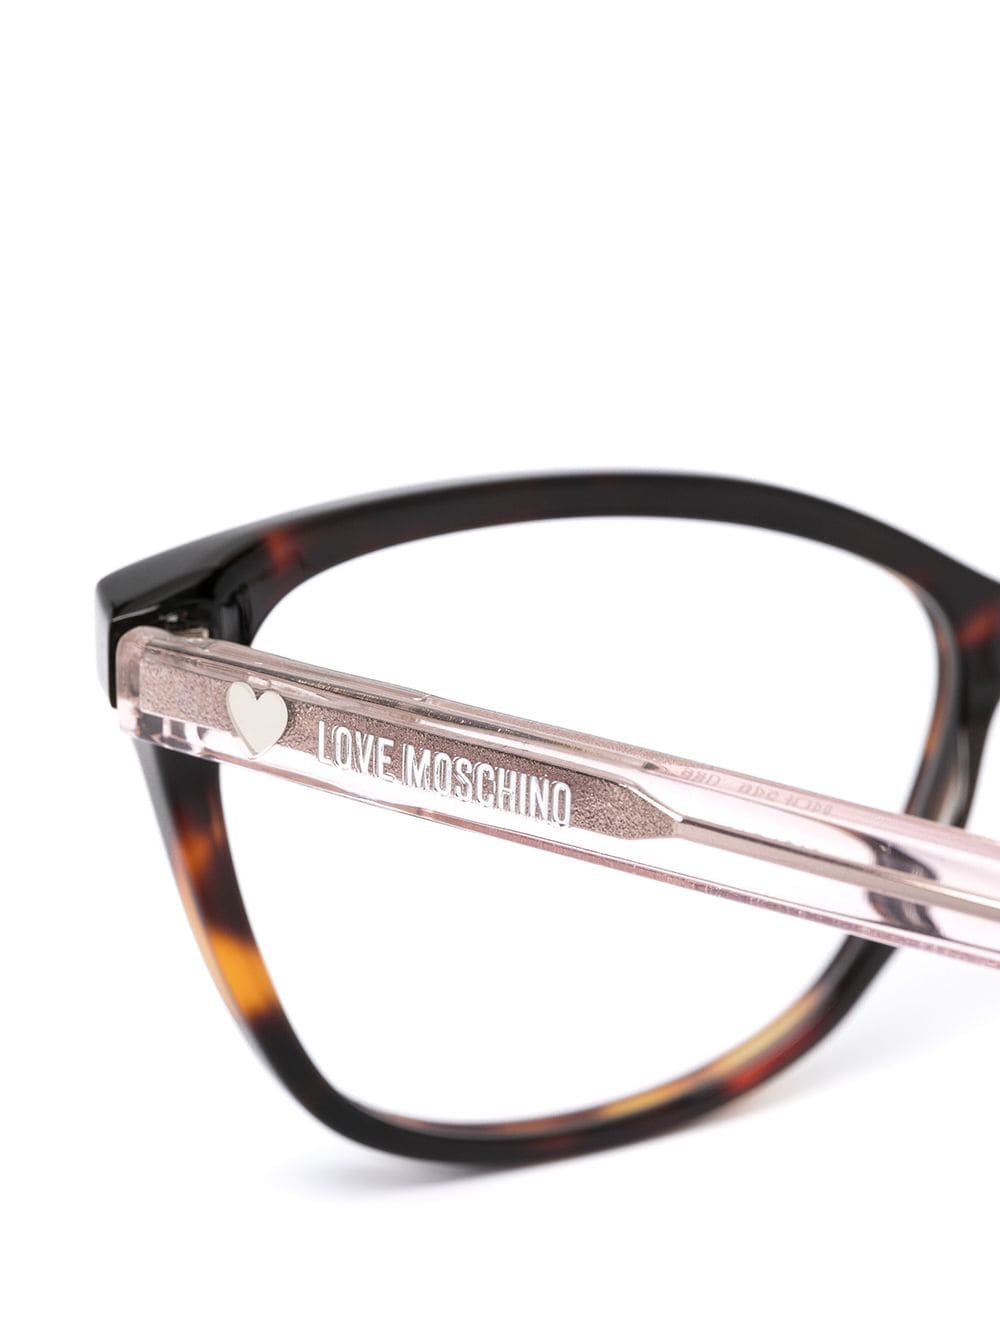 фото Love moschino очки в оправе черепаховой расцветки